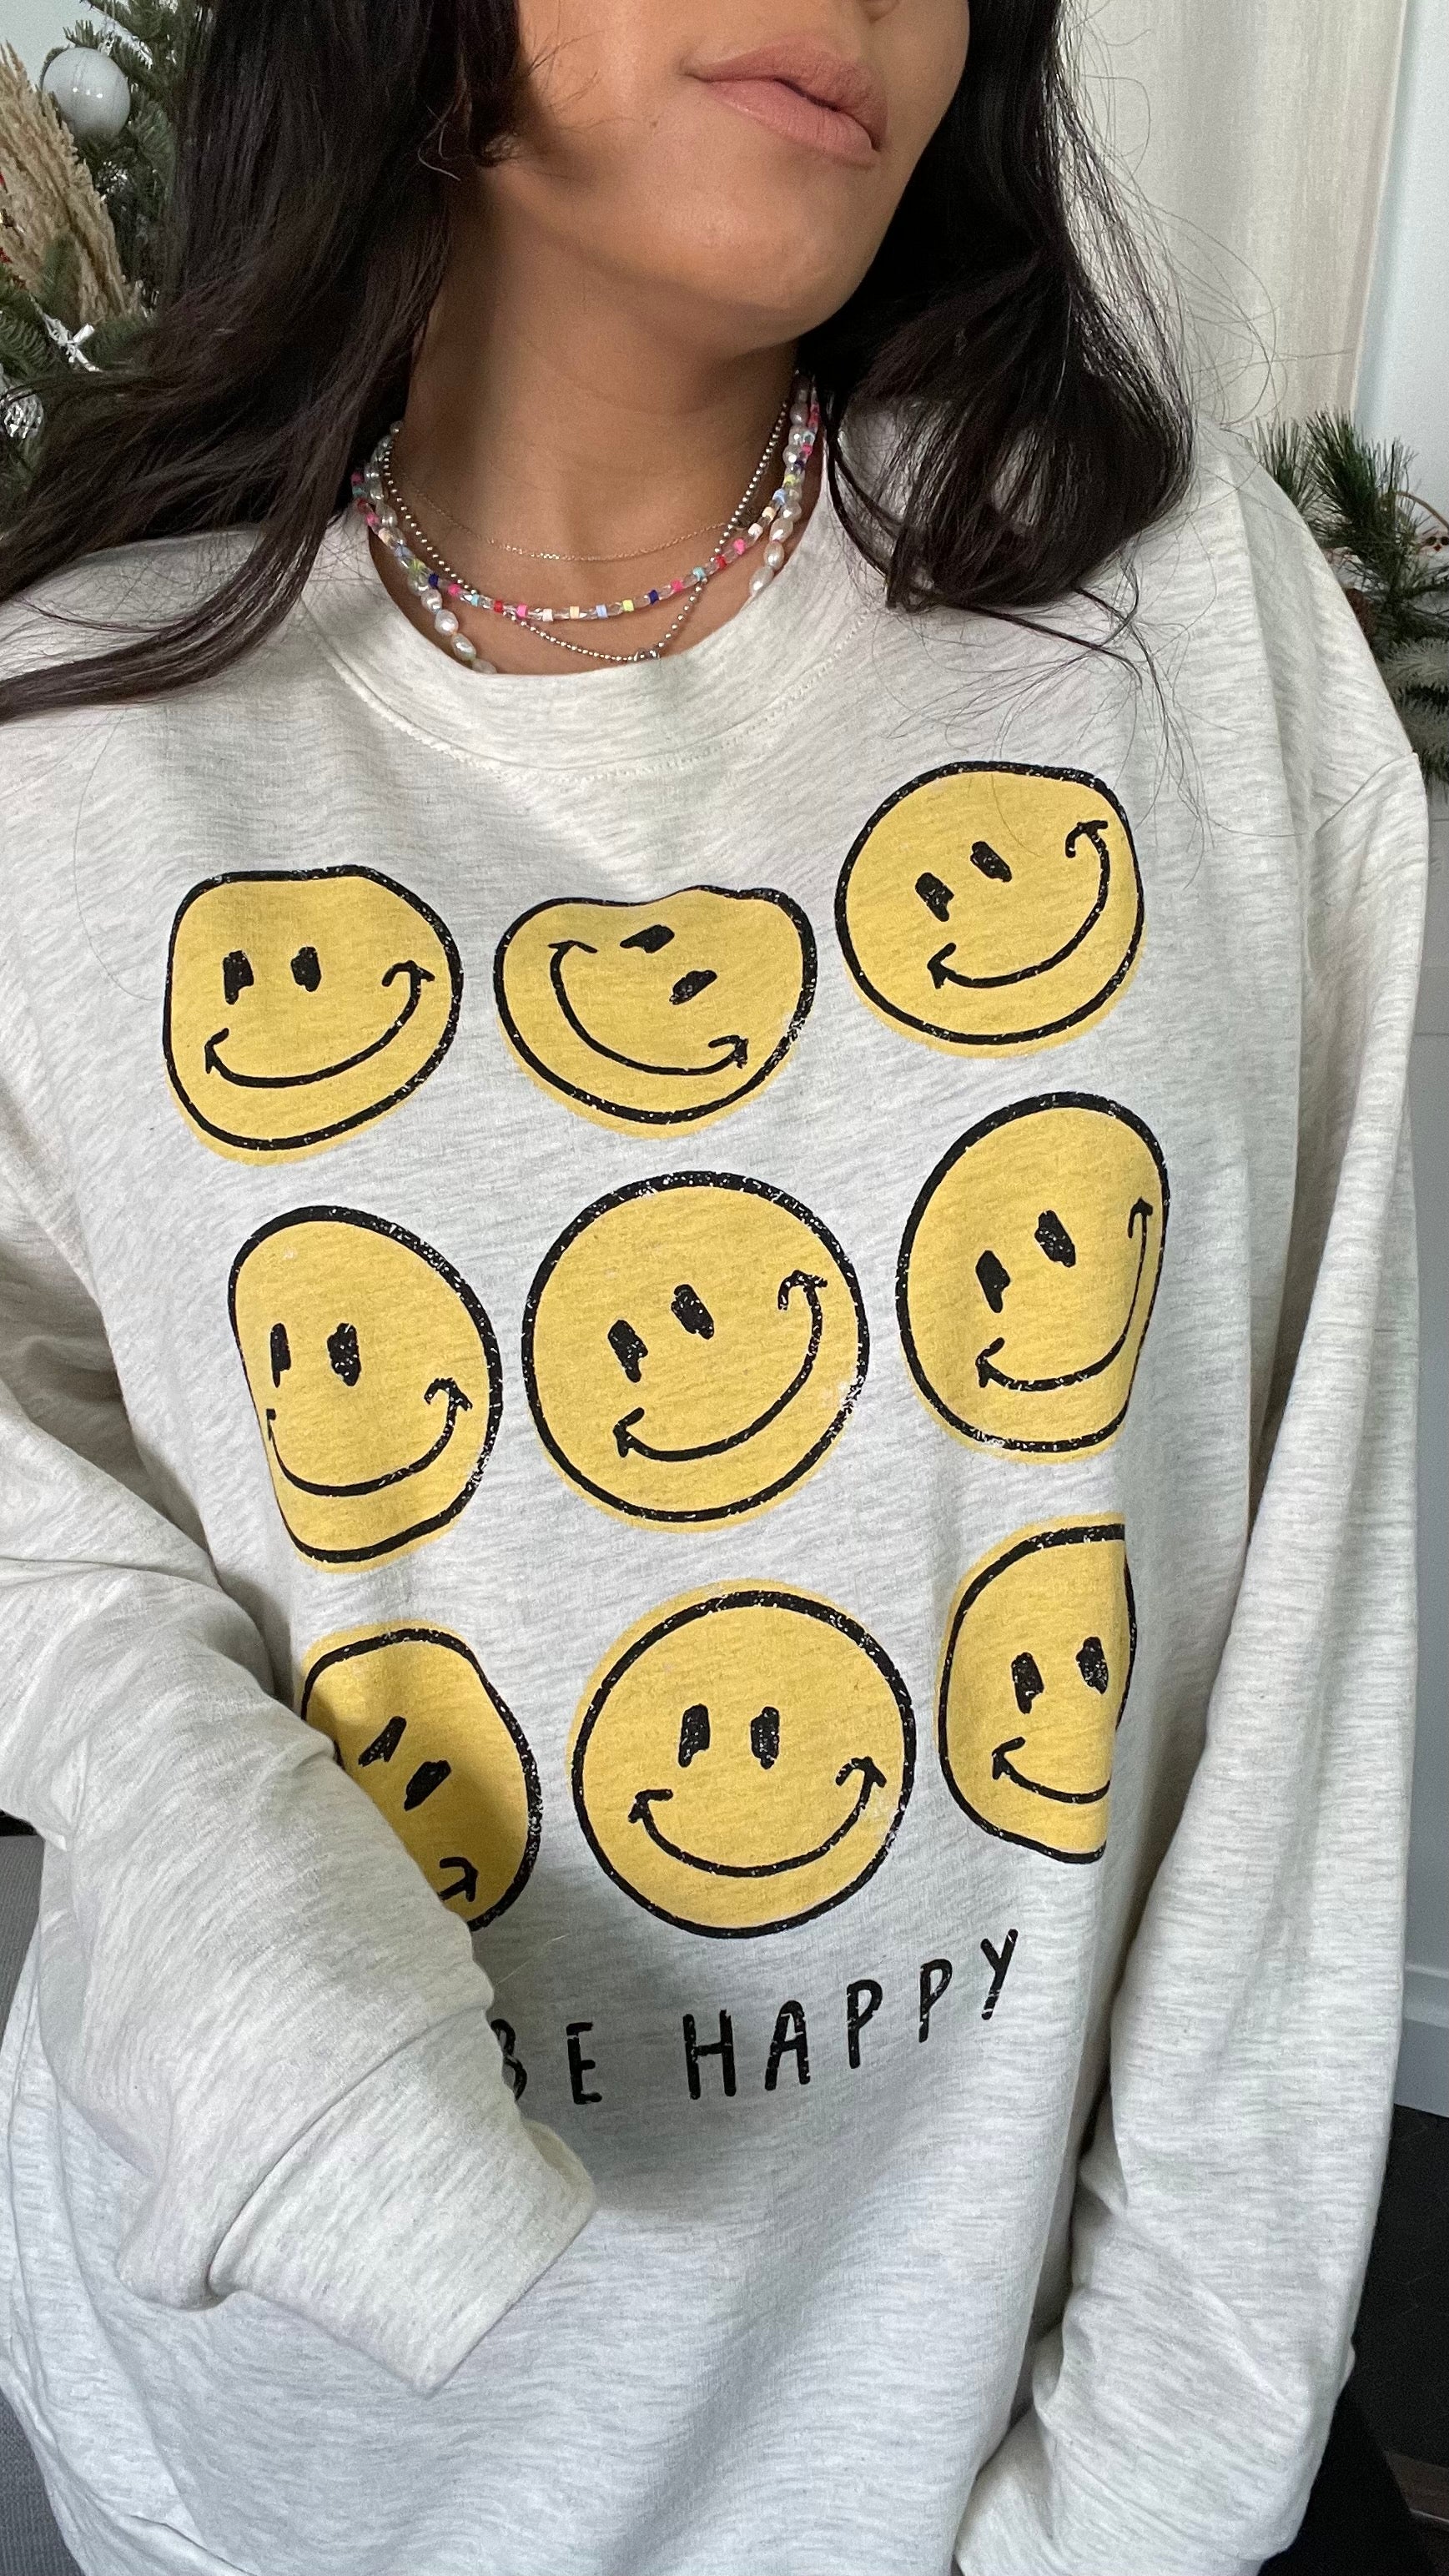 Mrs. Happytime Sweatshirt